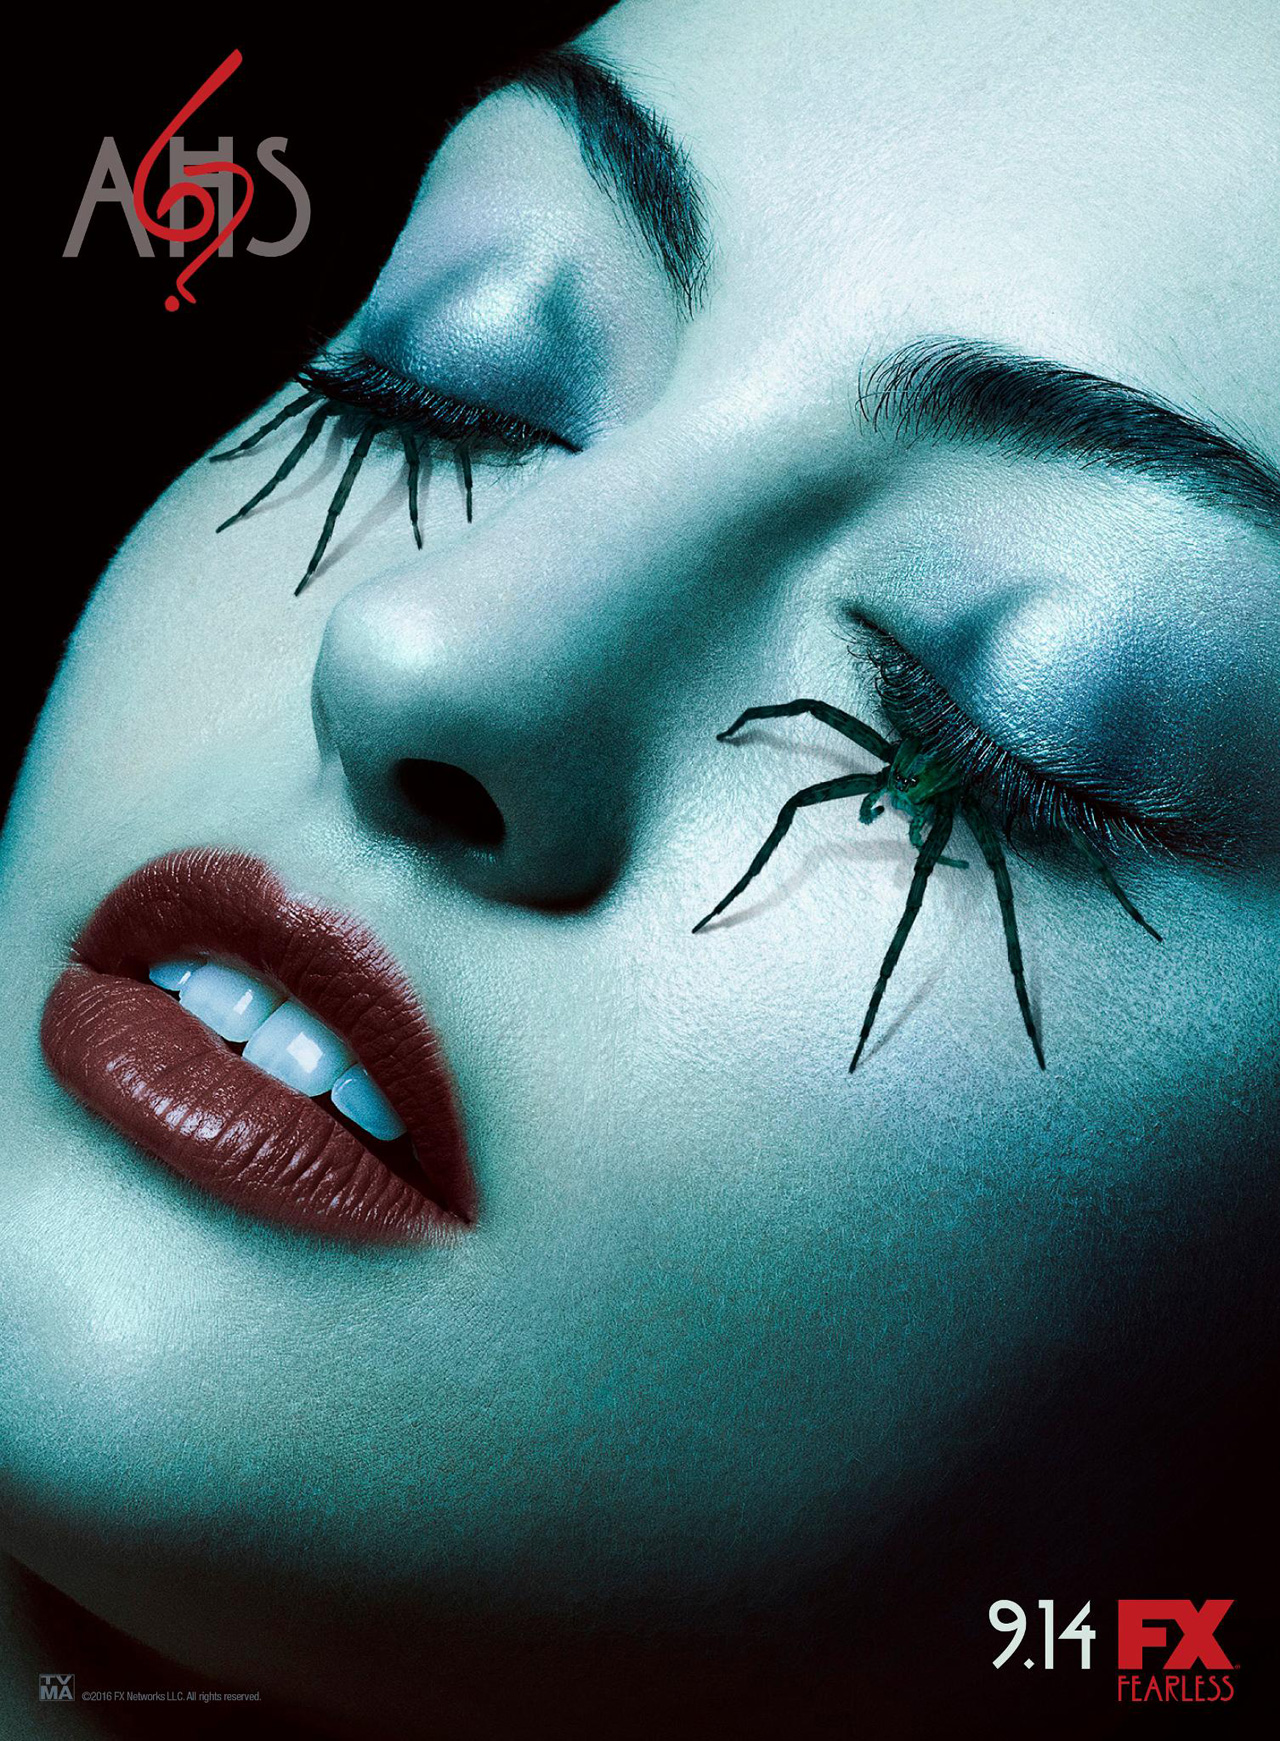 American Horror Story Une Affiche Arachnide Pour La Saison 6 News Séries Allociné 